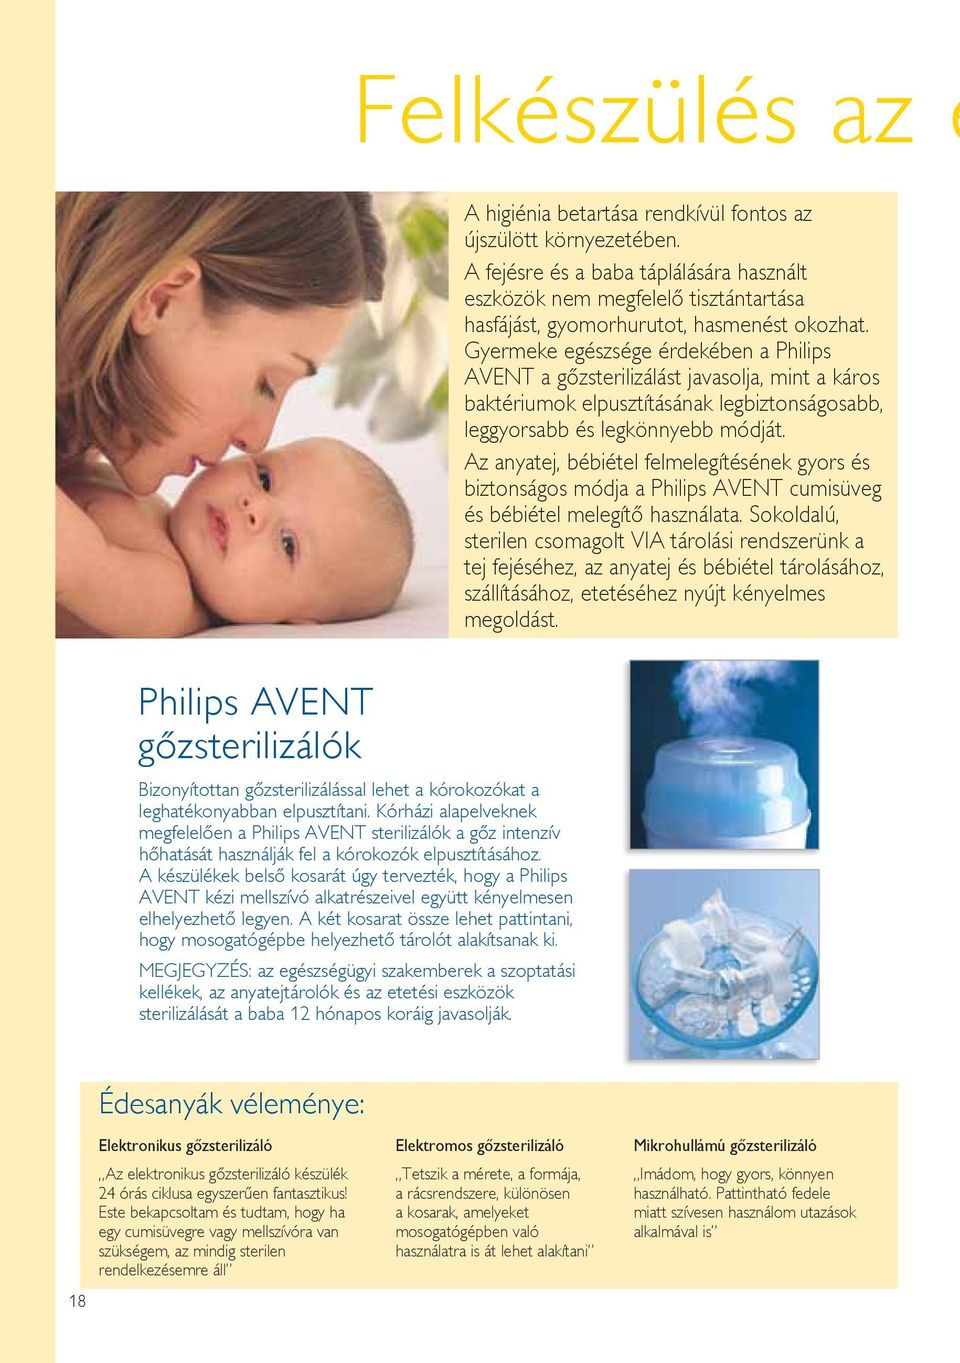 Gyermeke egészsége érdekében a Philips AVENT a gőzsterilizálást javasolja, mint a káros baktériumok elpusztításának legbiztonságosabb, leggyorsabb és legkönnyebb módját.